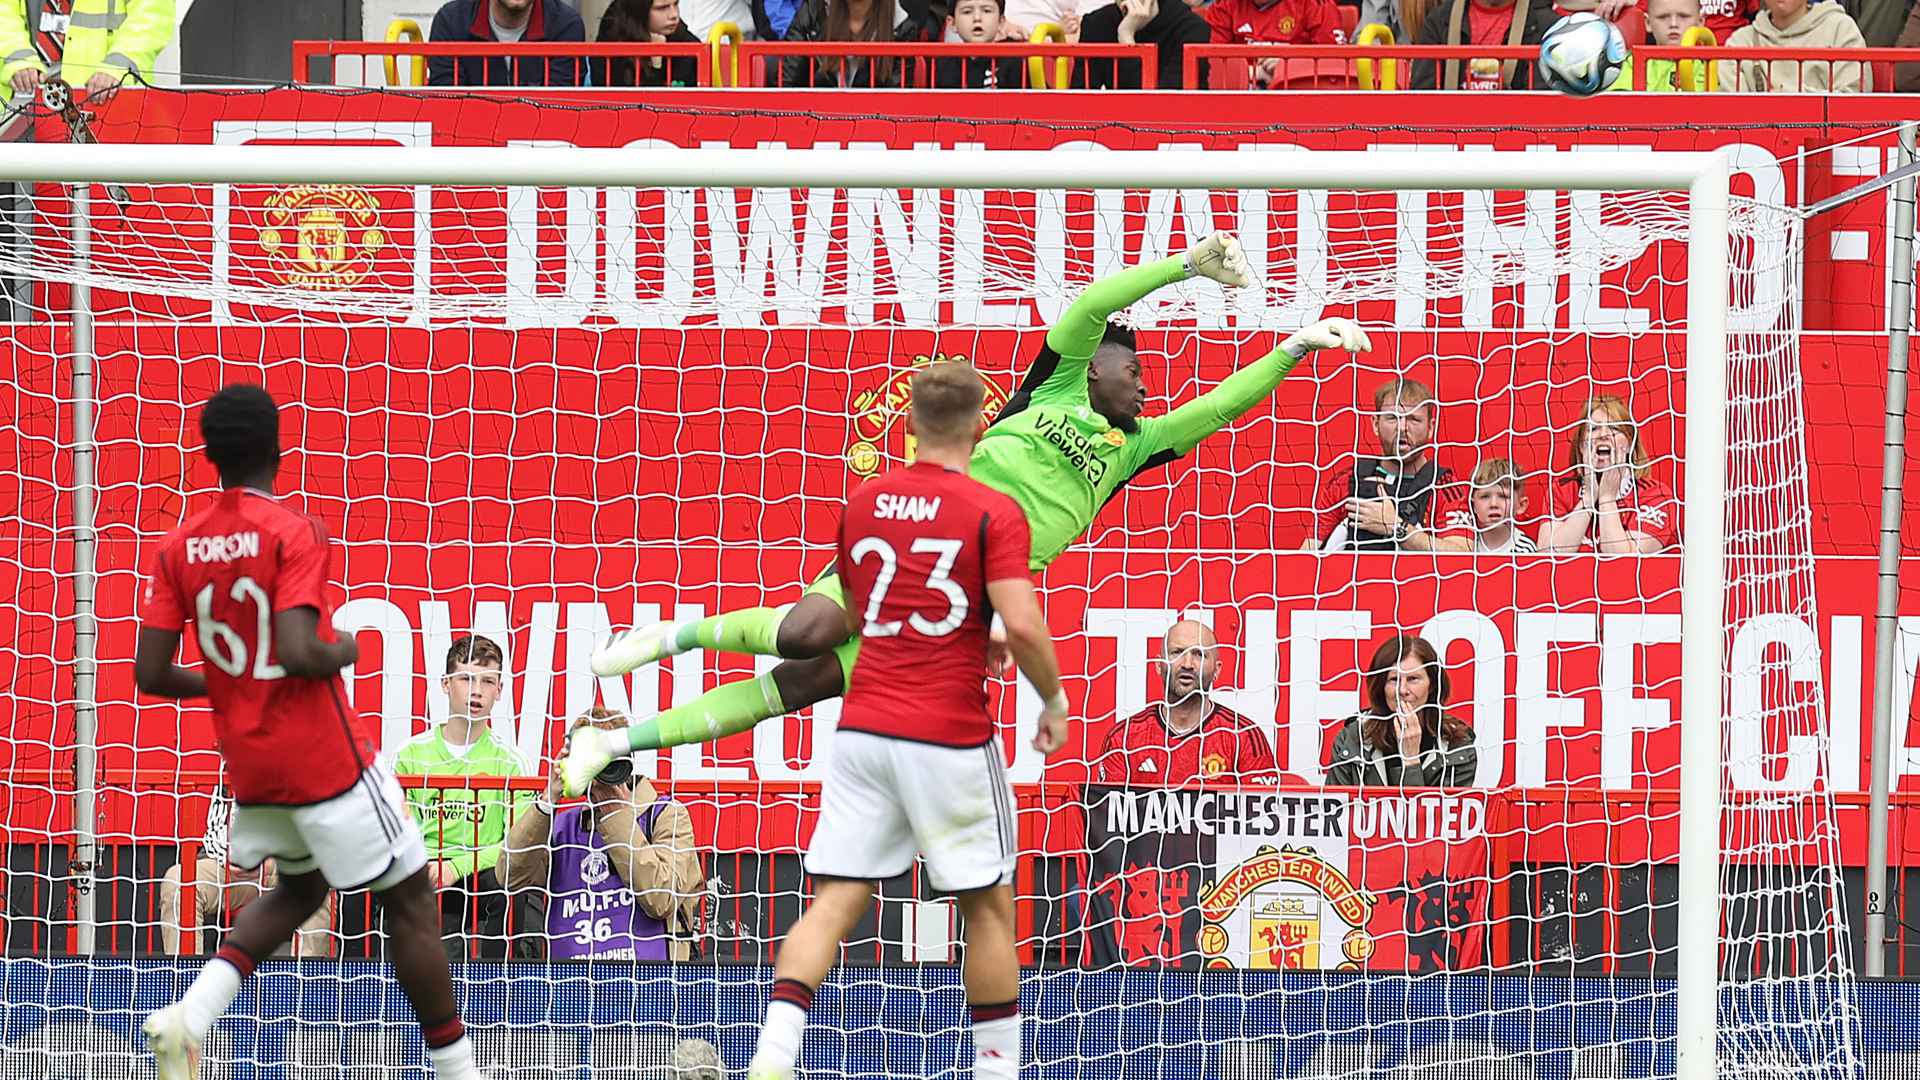 Video of Andre Onana save for Man Utd v Lens | Manchester United